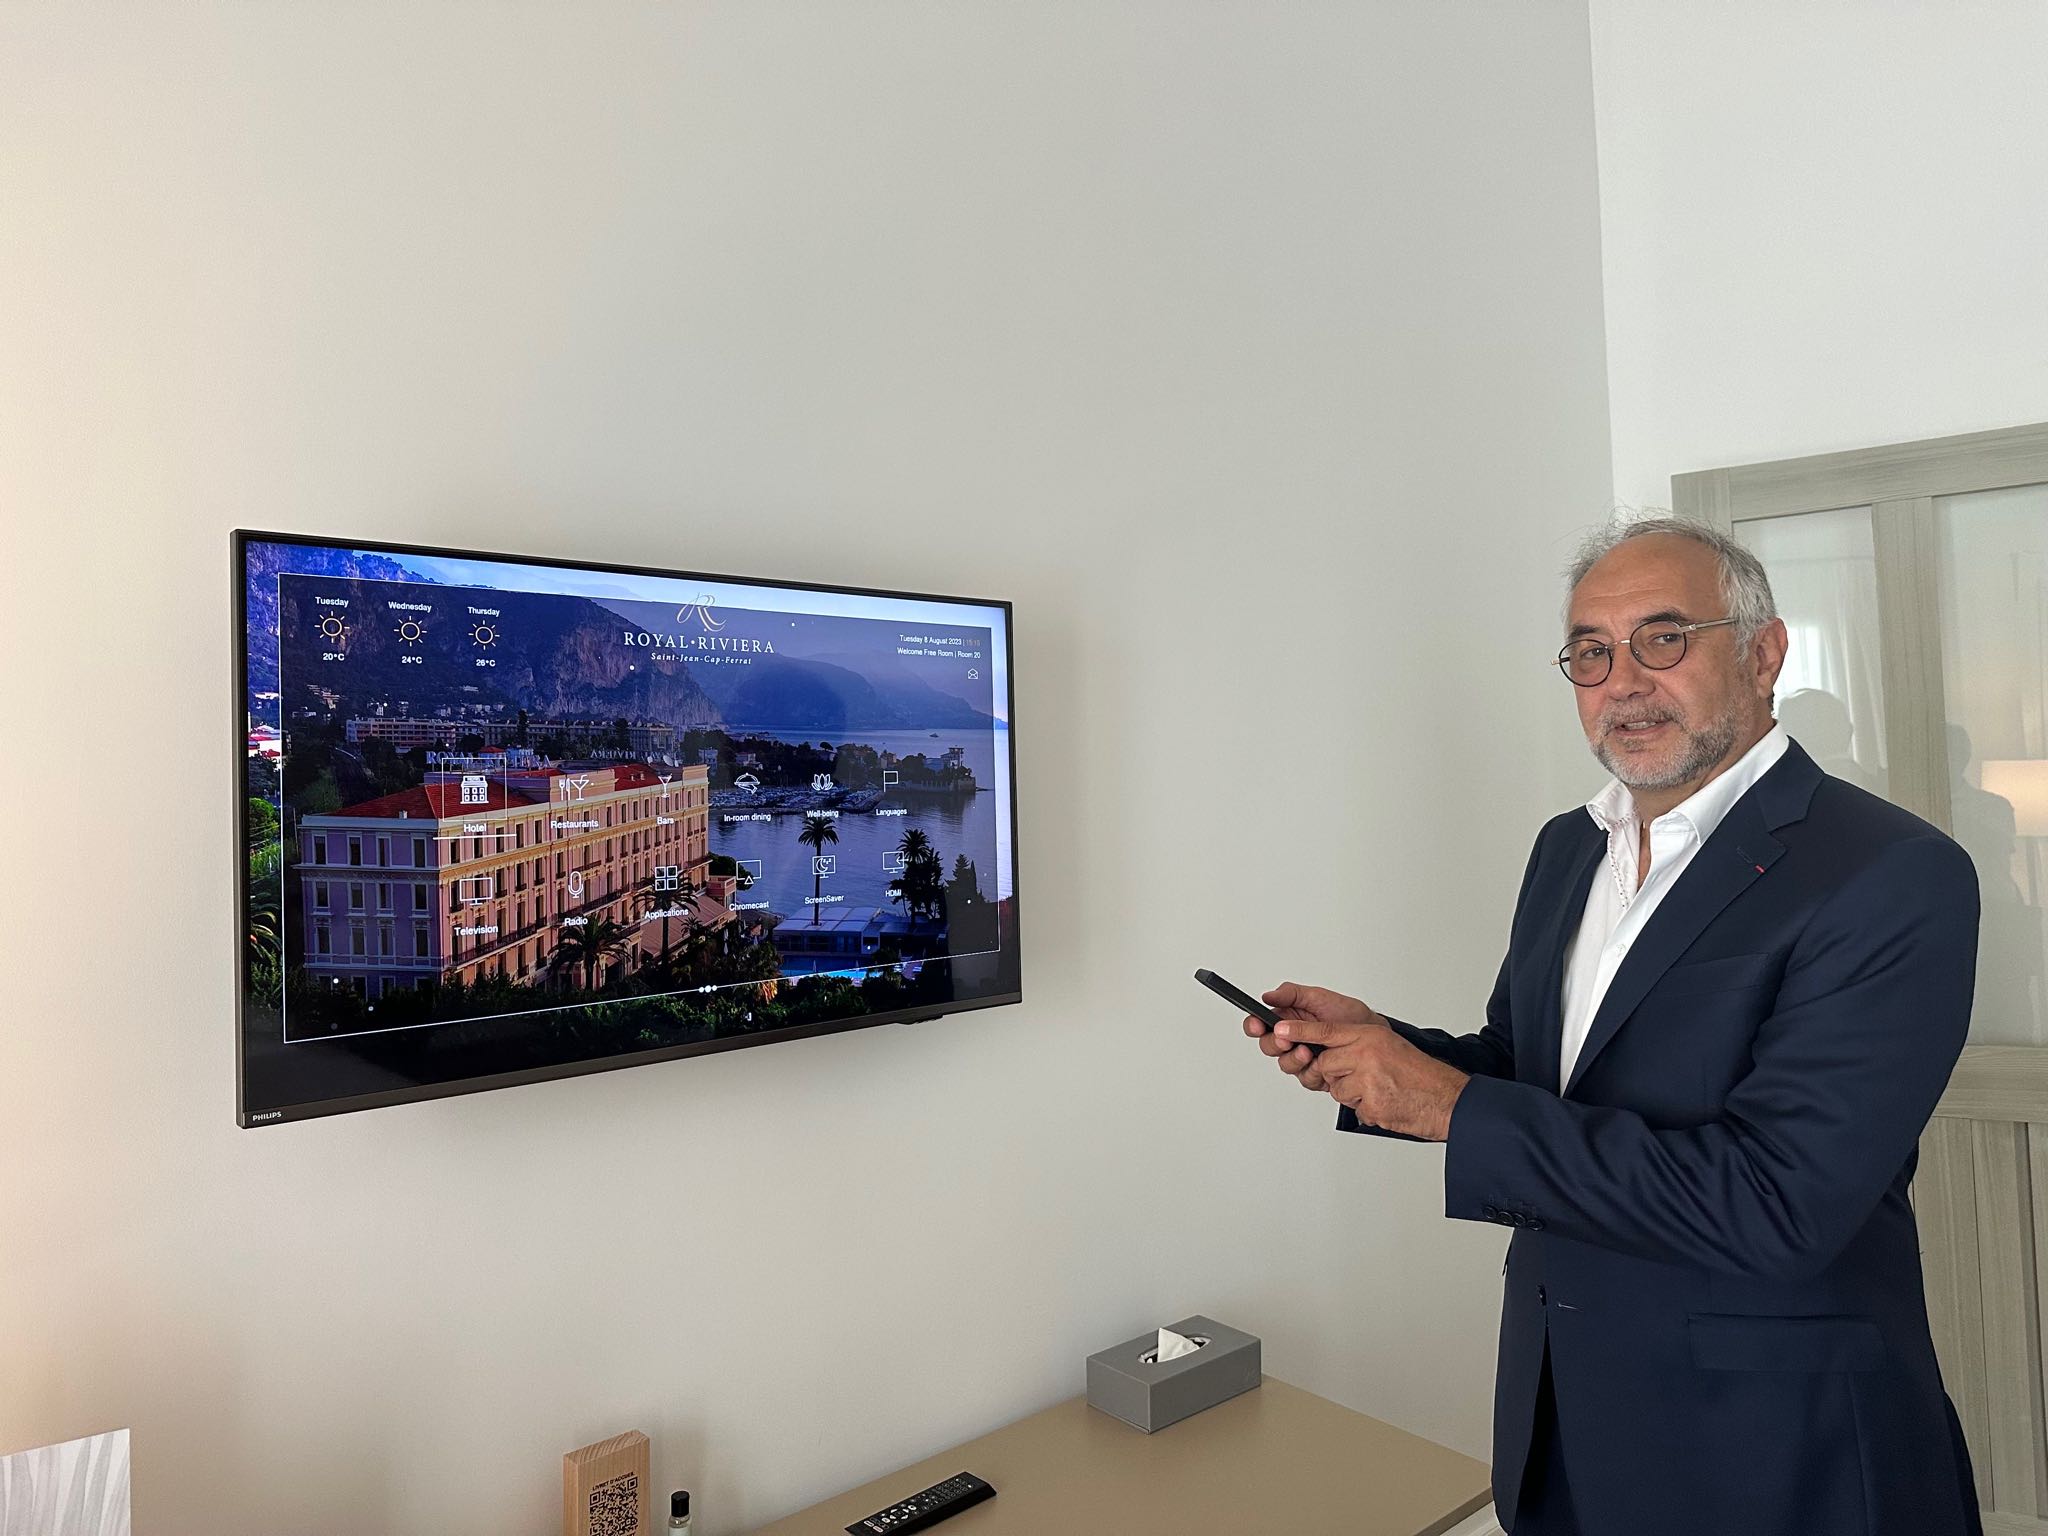 M. Mercadal, Directeur de l'Hôtel 5*, le Royal Riviera à Saint Jean Cap Ferrat, utilise la solution GHX sur la TV d'un des chambres de l'hôtel